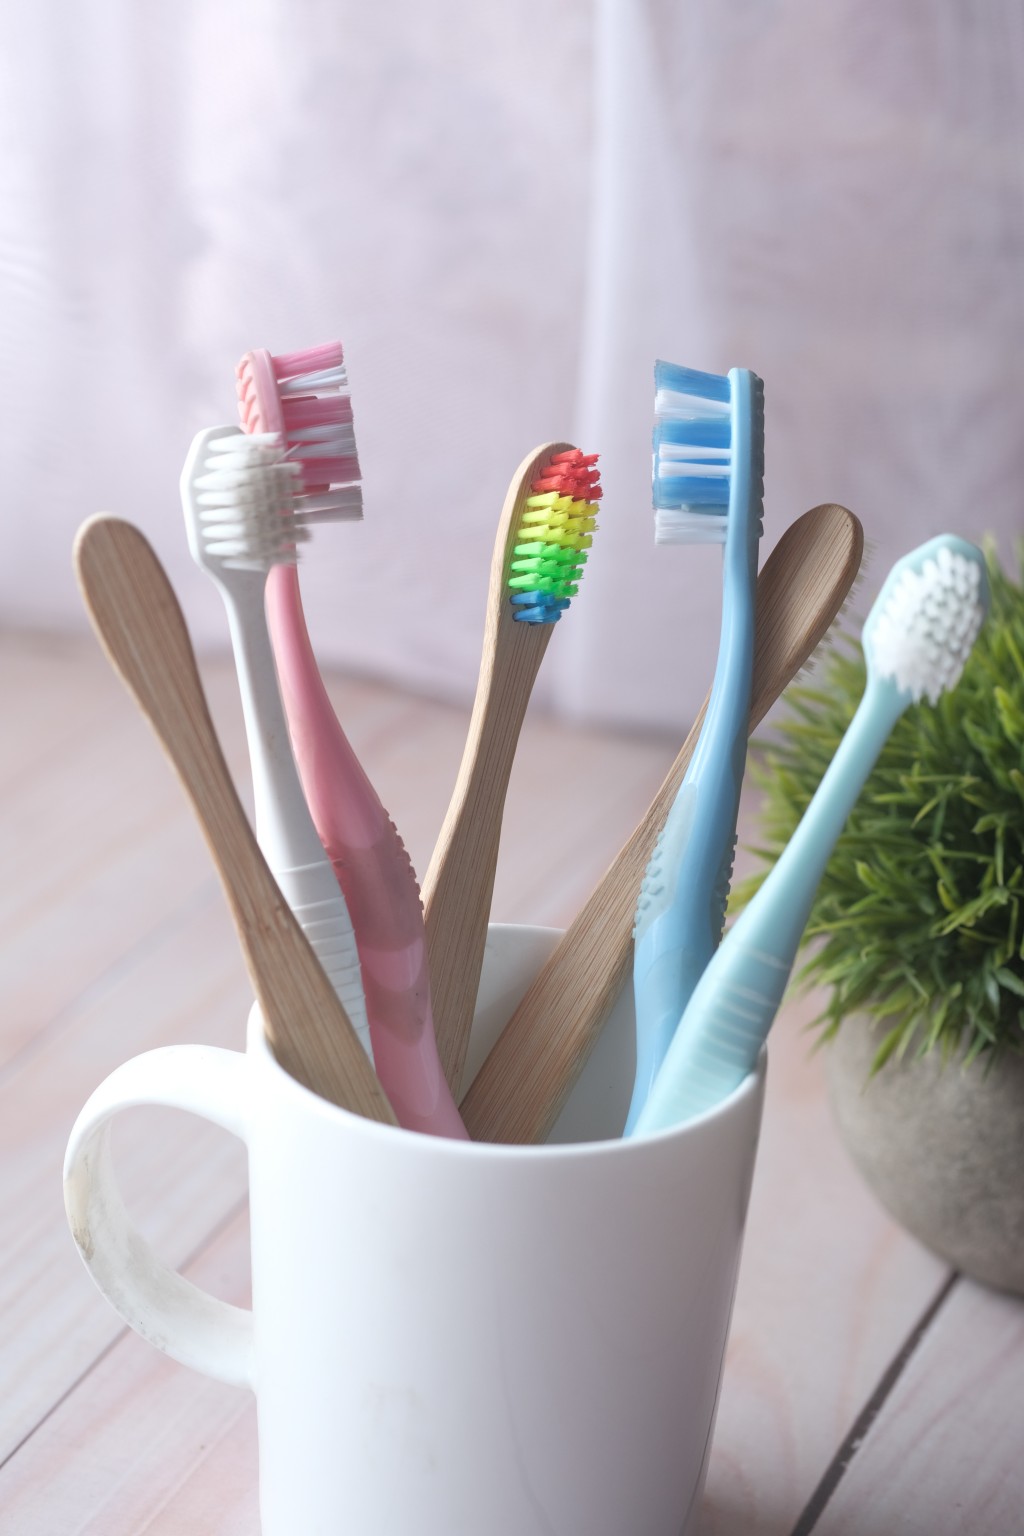 研究指牙刷柄的細菌量比起牙刷刷毛還多。 unsplash